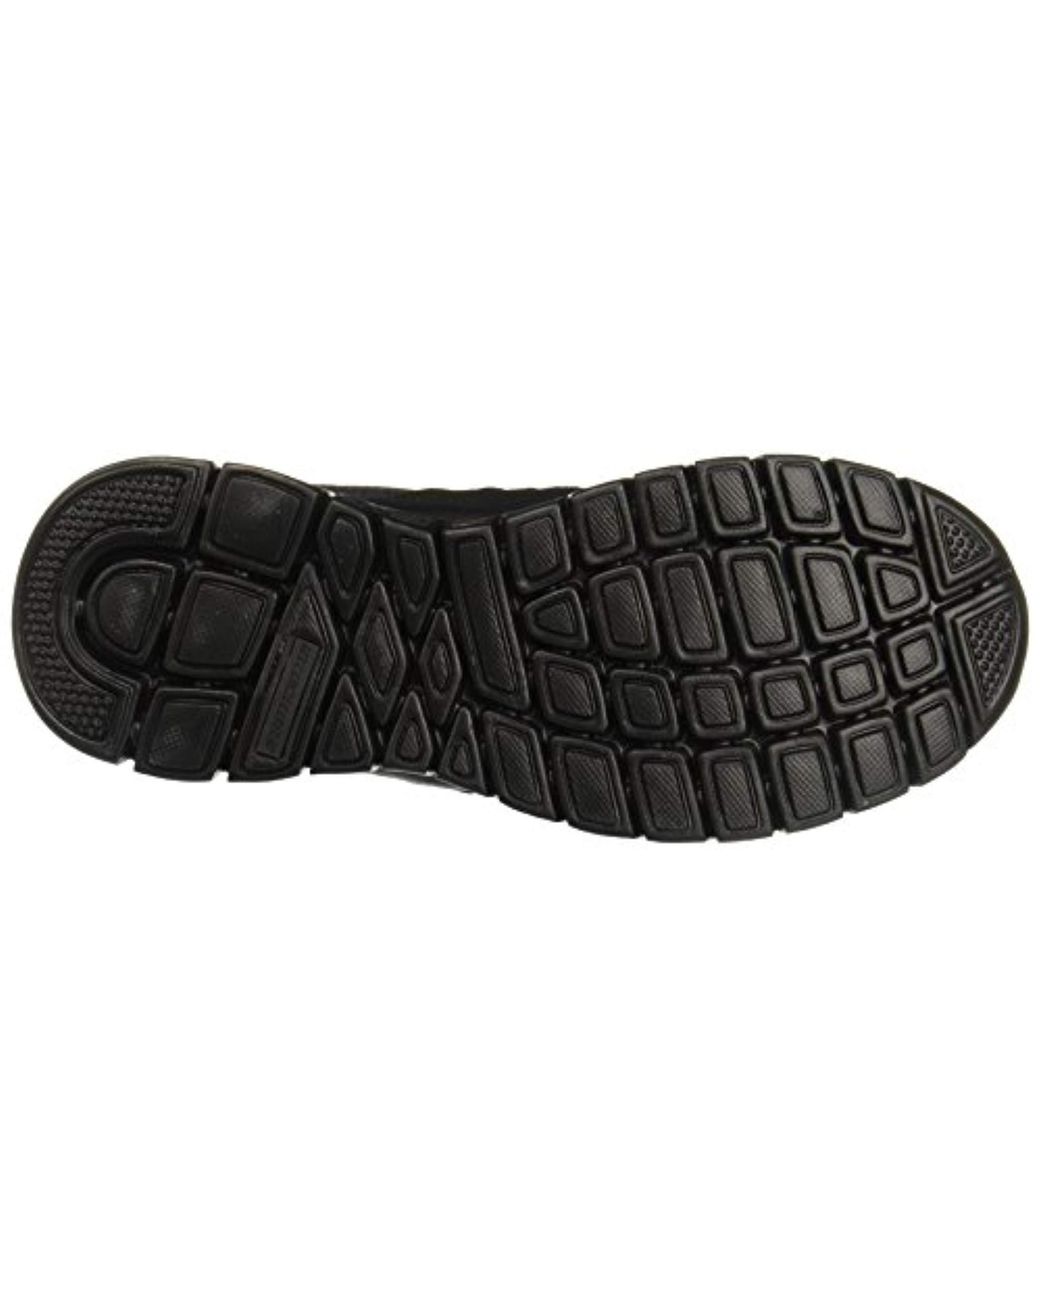 Skechers Burns 52635-bbk Low-top Sneakers in Black for Men | Lyst UK